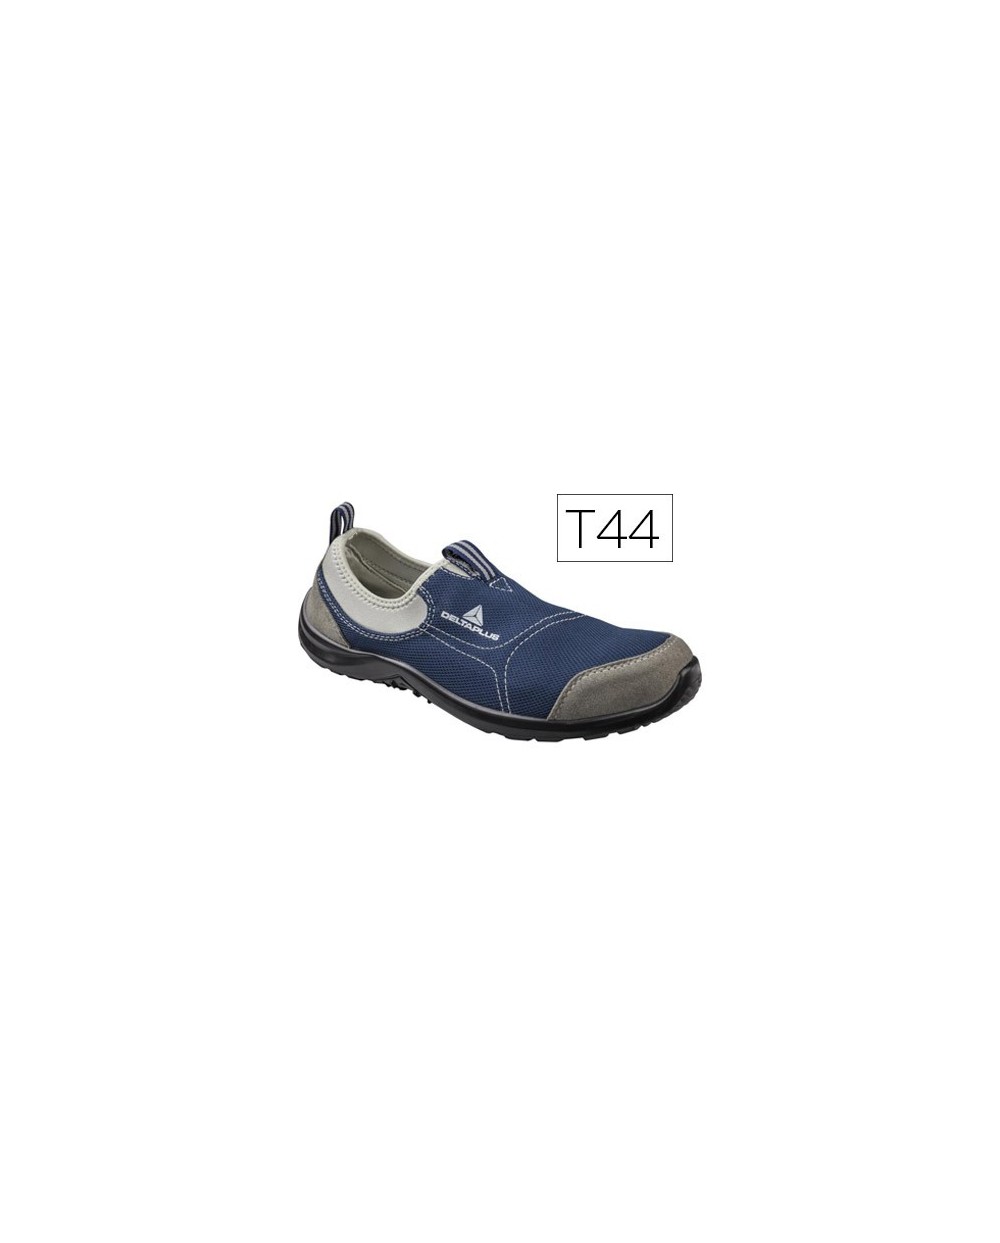 Zapatos de seguridad deltaplus de poliester y algodon con plantilla y puntera color azul marino talla 44